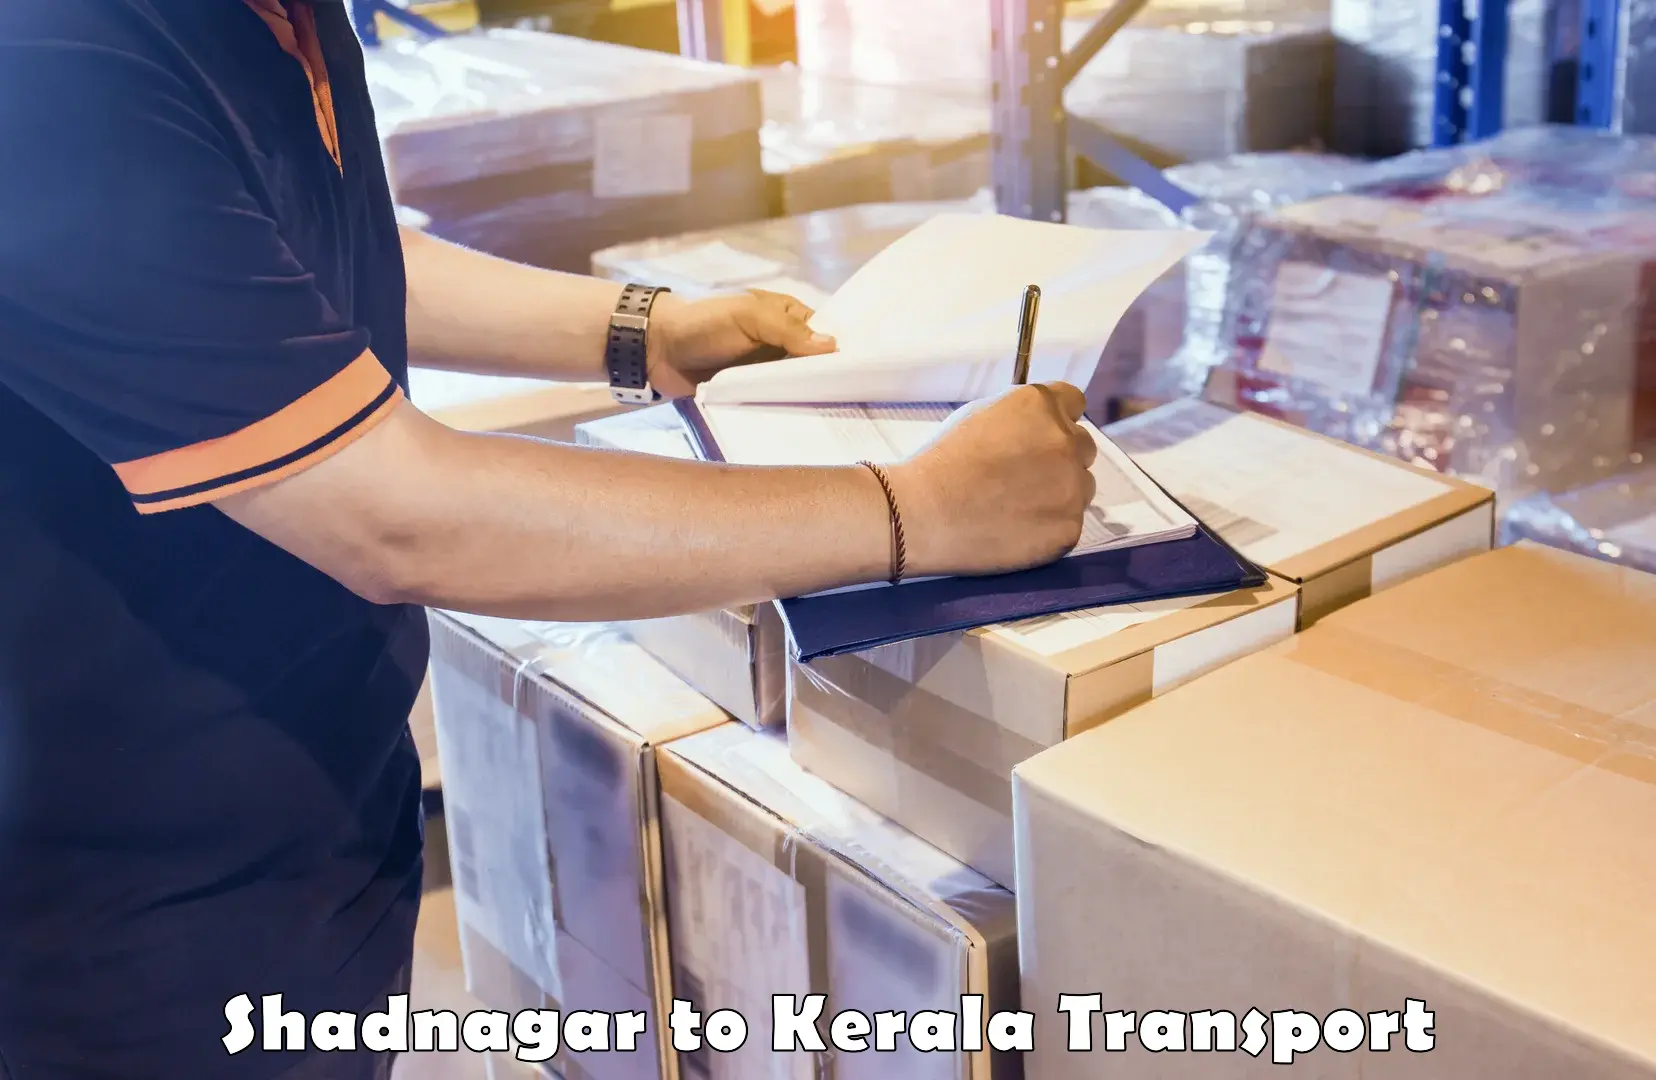 Truck transport companies in India Shadnagar to Panayathamparamba